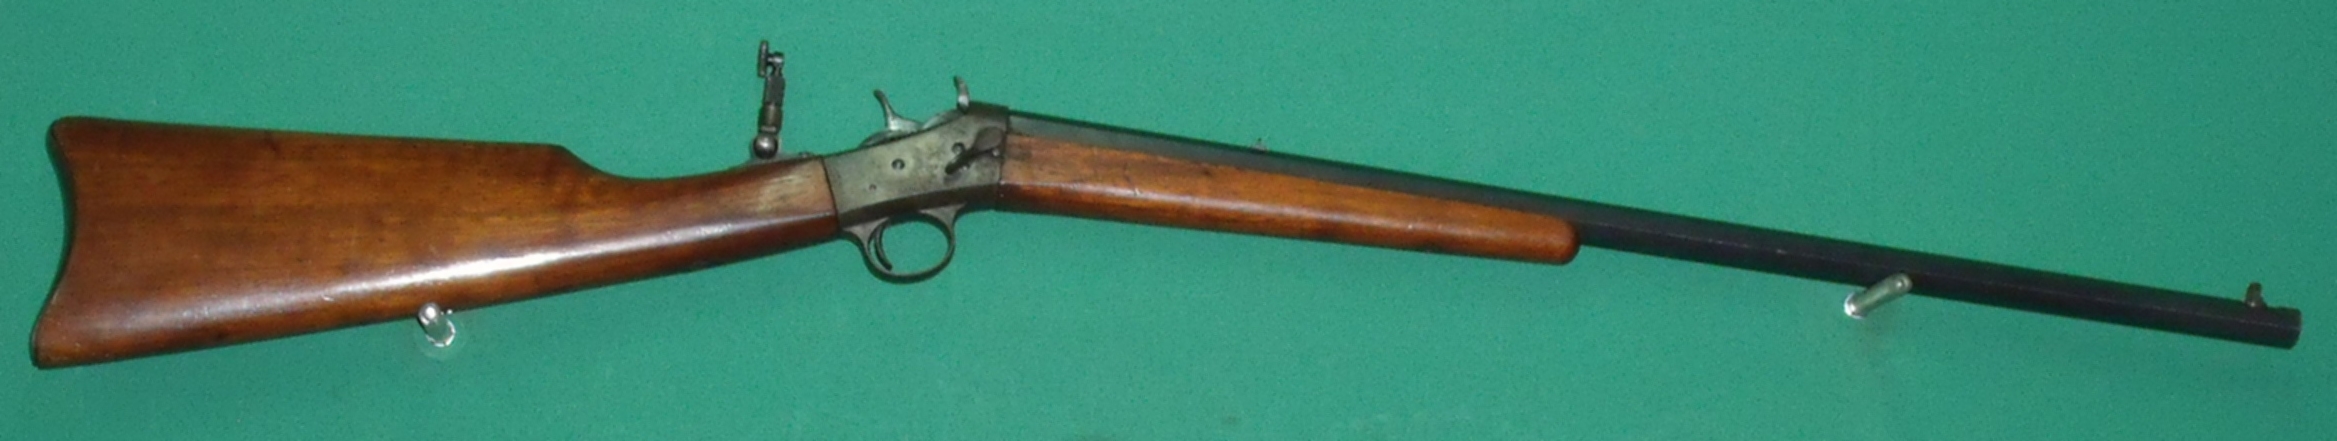 Remington n4